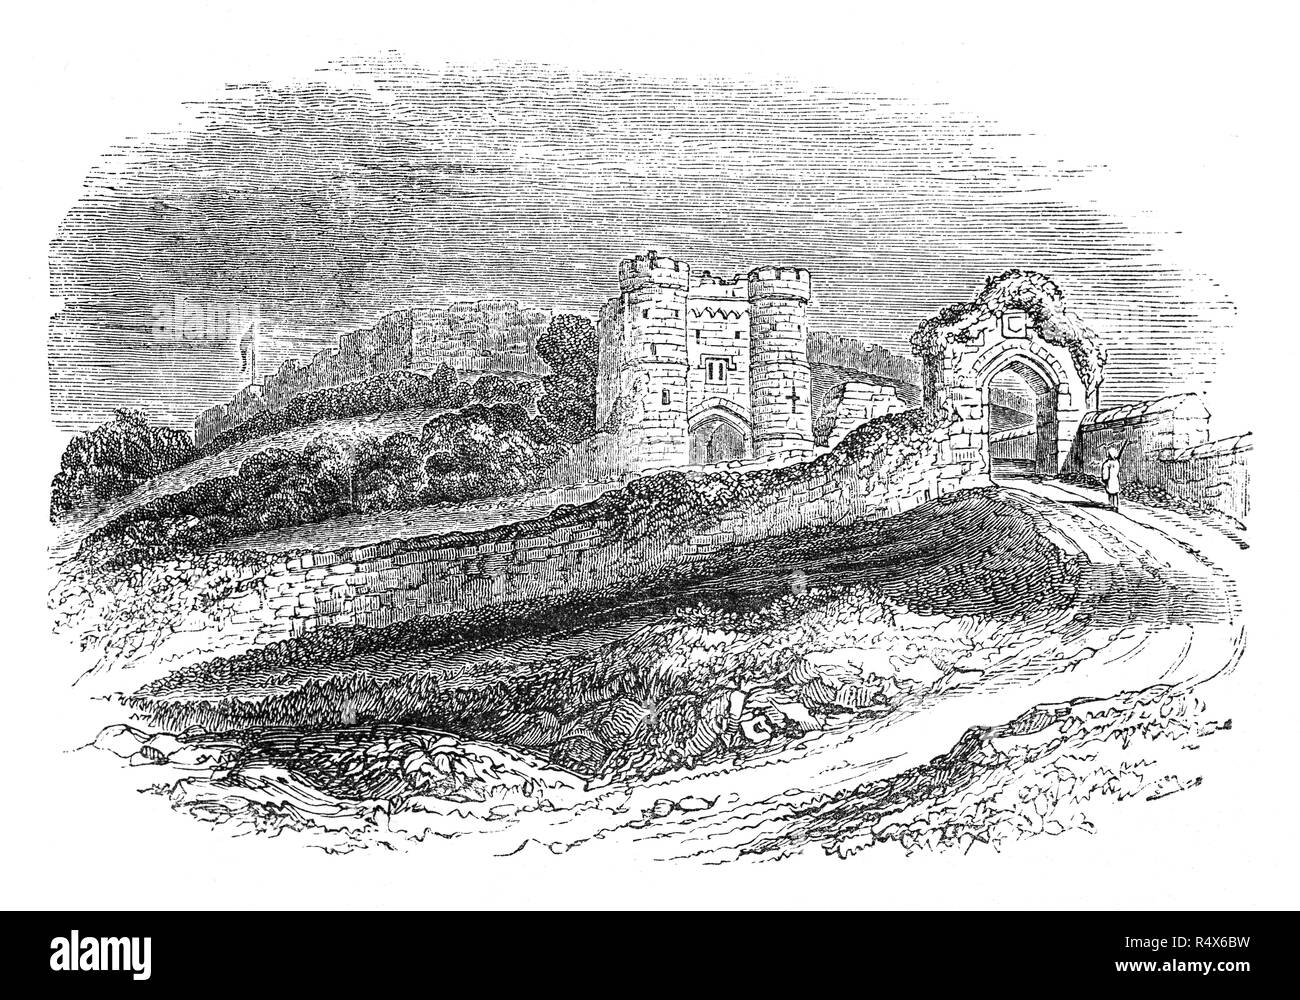 Carisbrooke Castle è una storica motte-e-bailey castello situato nel villaggio di Carisbrooke (vicino a Newport), Isola di Wight in Inghilterra. Il mastio è stato aggiunto al castello nel regno di Enrico I, ed era circondato da fortificazioni aggiuntive sotto il regno di Elisabetta I, quando la Armada spagnola era atteso nel 1583. Carey ha commissionato il tecnico italiano Federigo Giambelli (o Genebelli) per rendere più sostanziali miglioramenti alla difesa nel 1600. Charles ho qui venne imprigionato per quattordici mesi prima della sua esecuzione nel 1649. Foto Stock